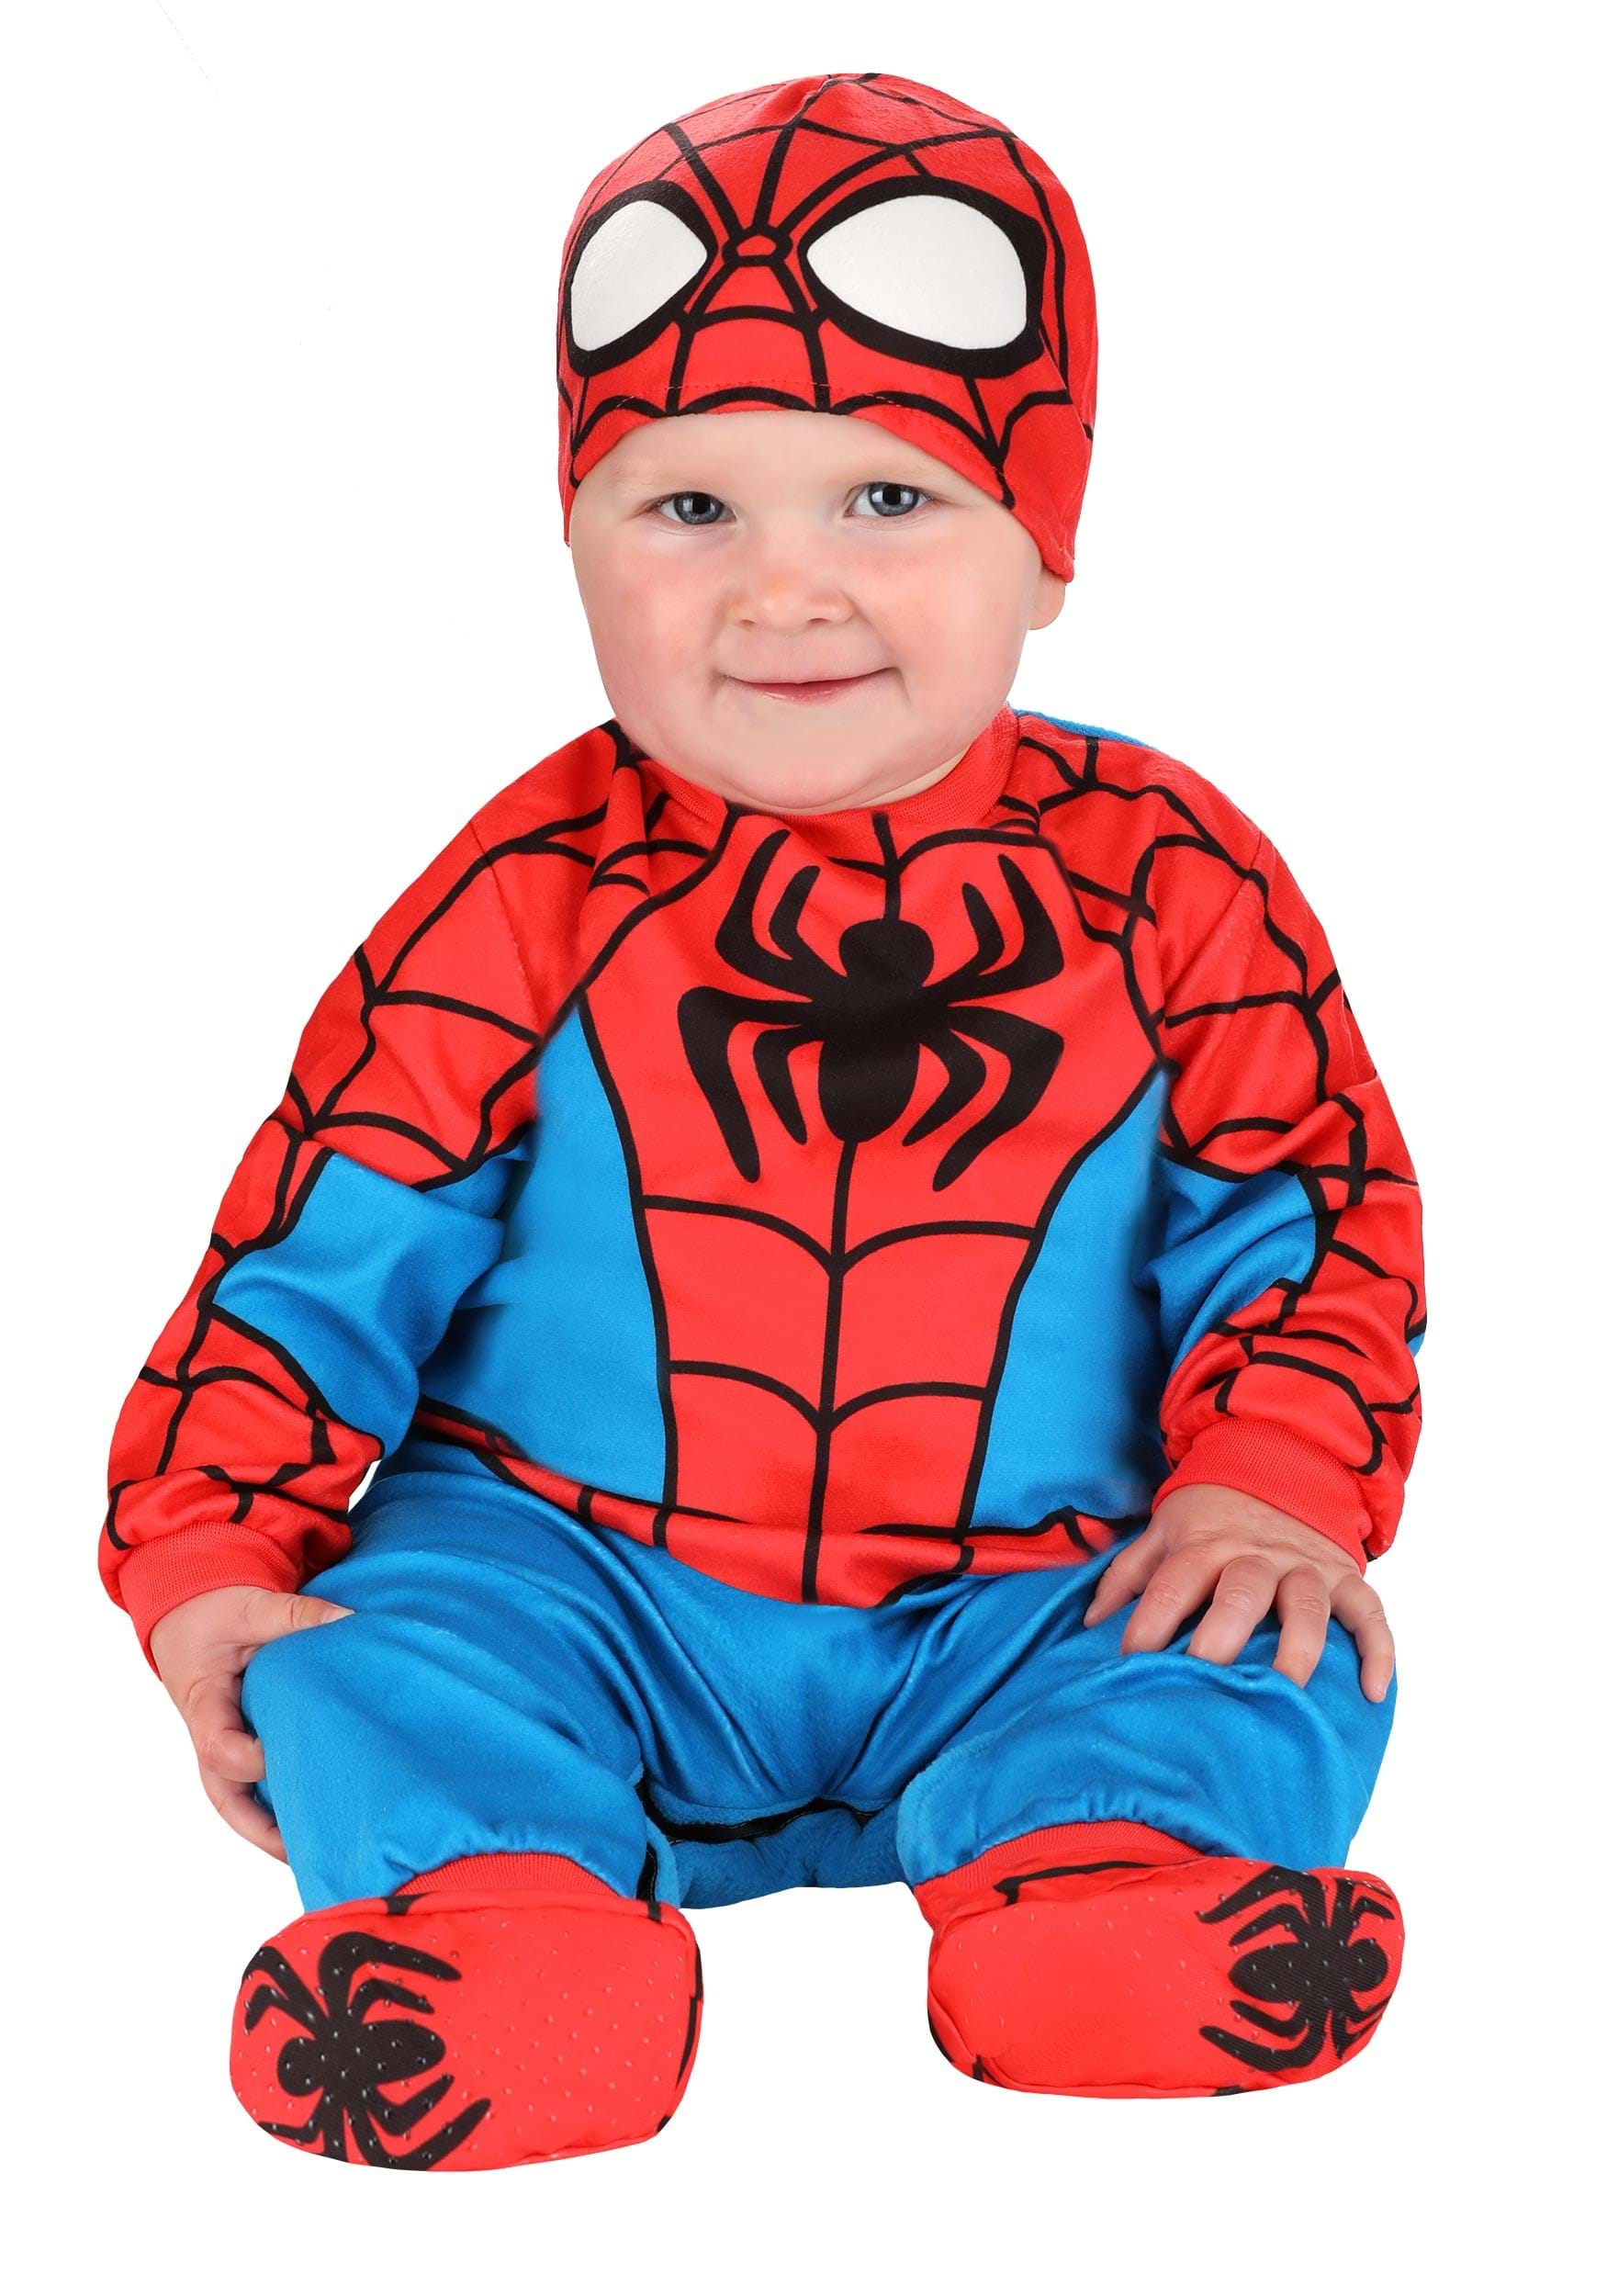 Photos - Fancy Dress Jazwares Spider-Man Infant Costume Black/Blue/Red JWC0646 